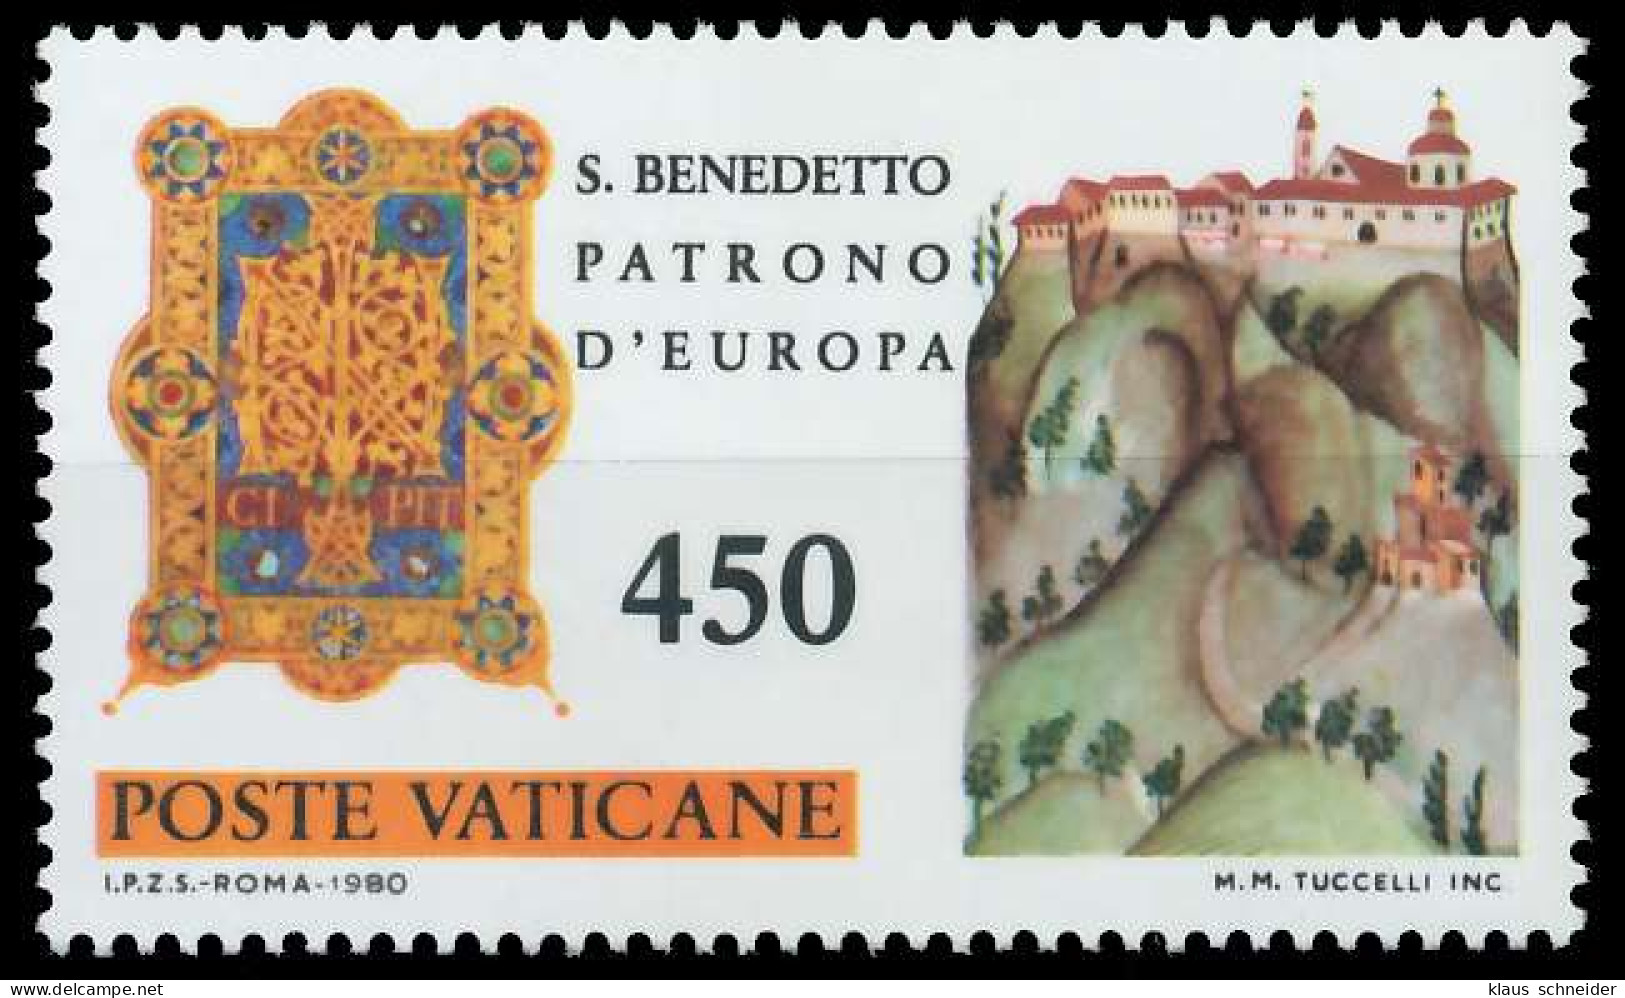 VATIKAN 1980 Nr 763 Postfrisch S2273AA - Unused Stamps